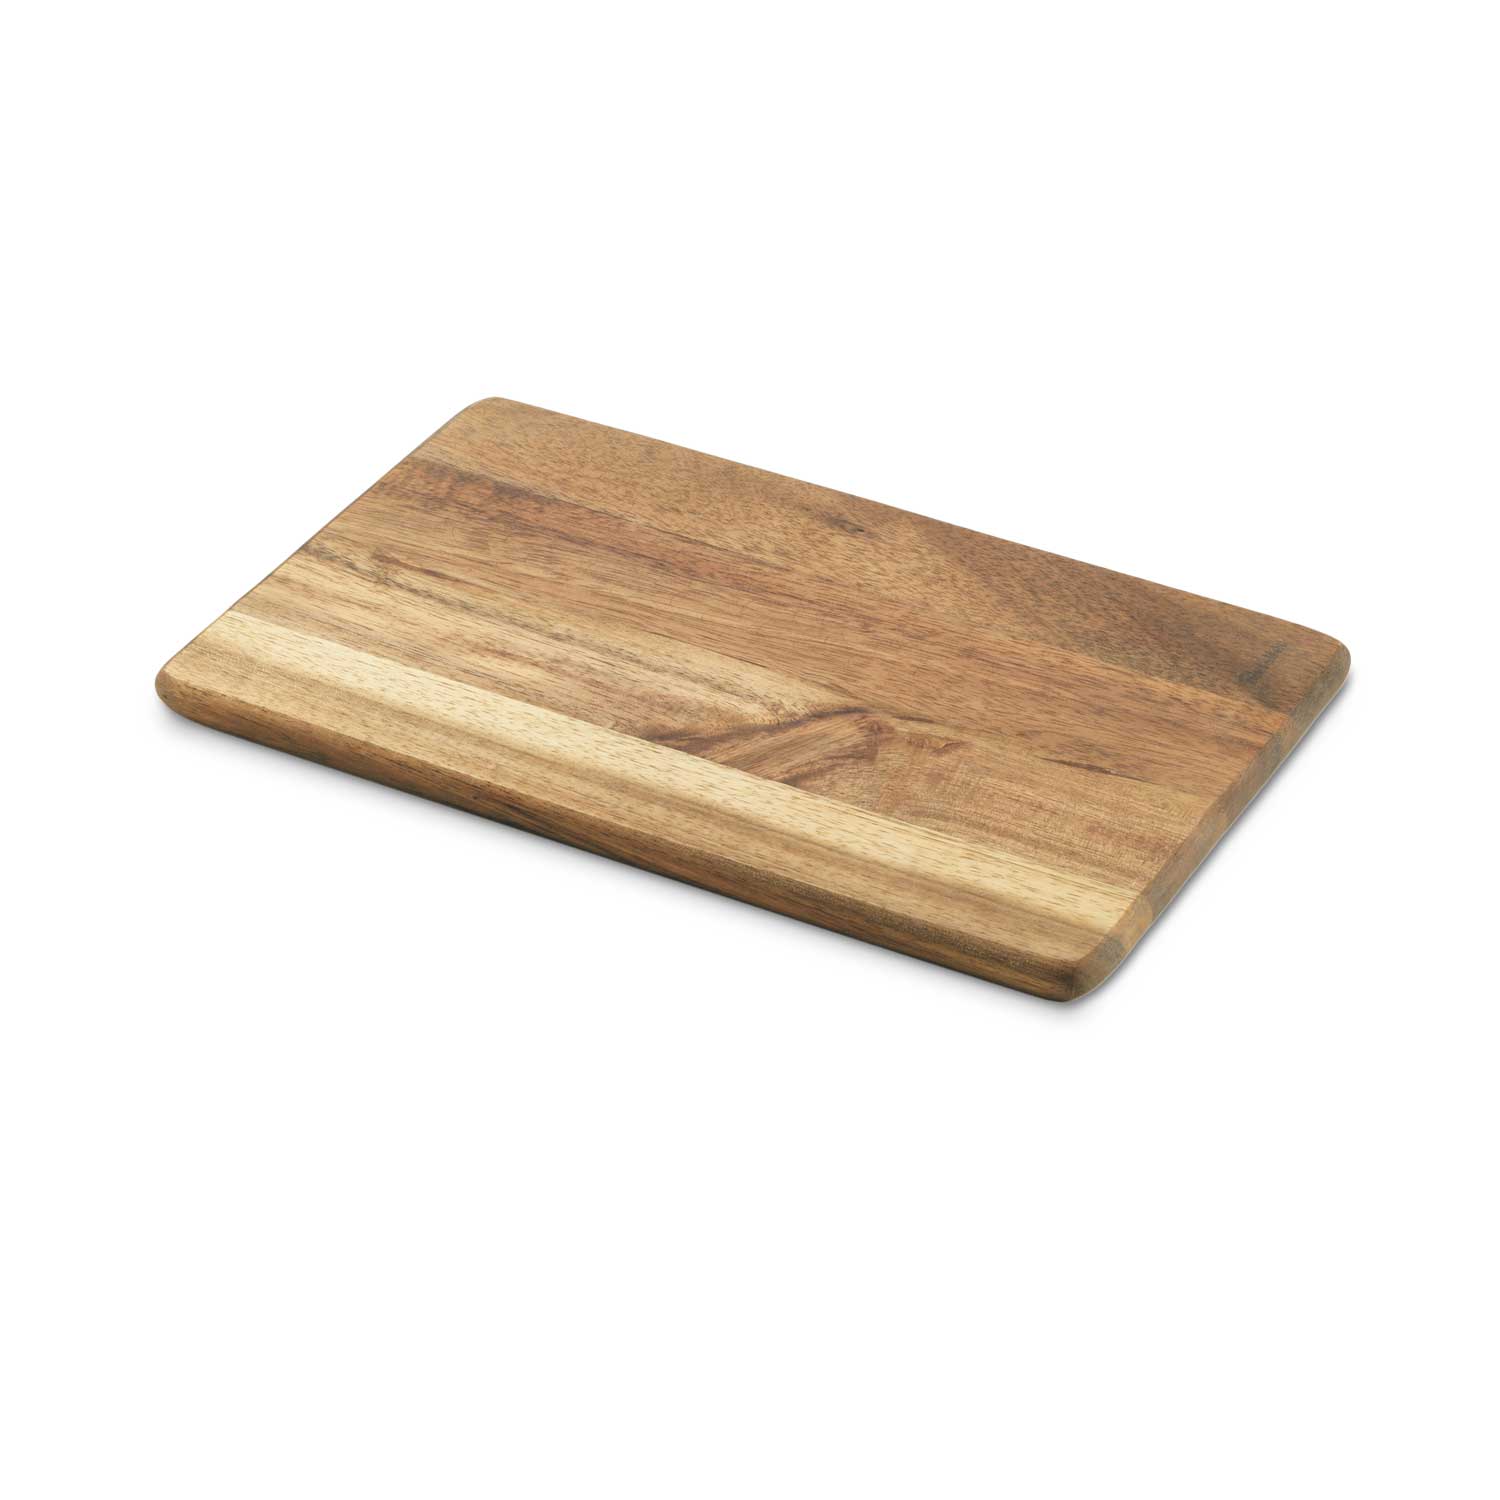 METALTEX standard cutting board